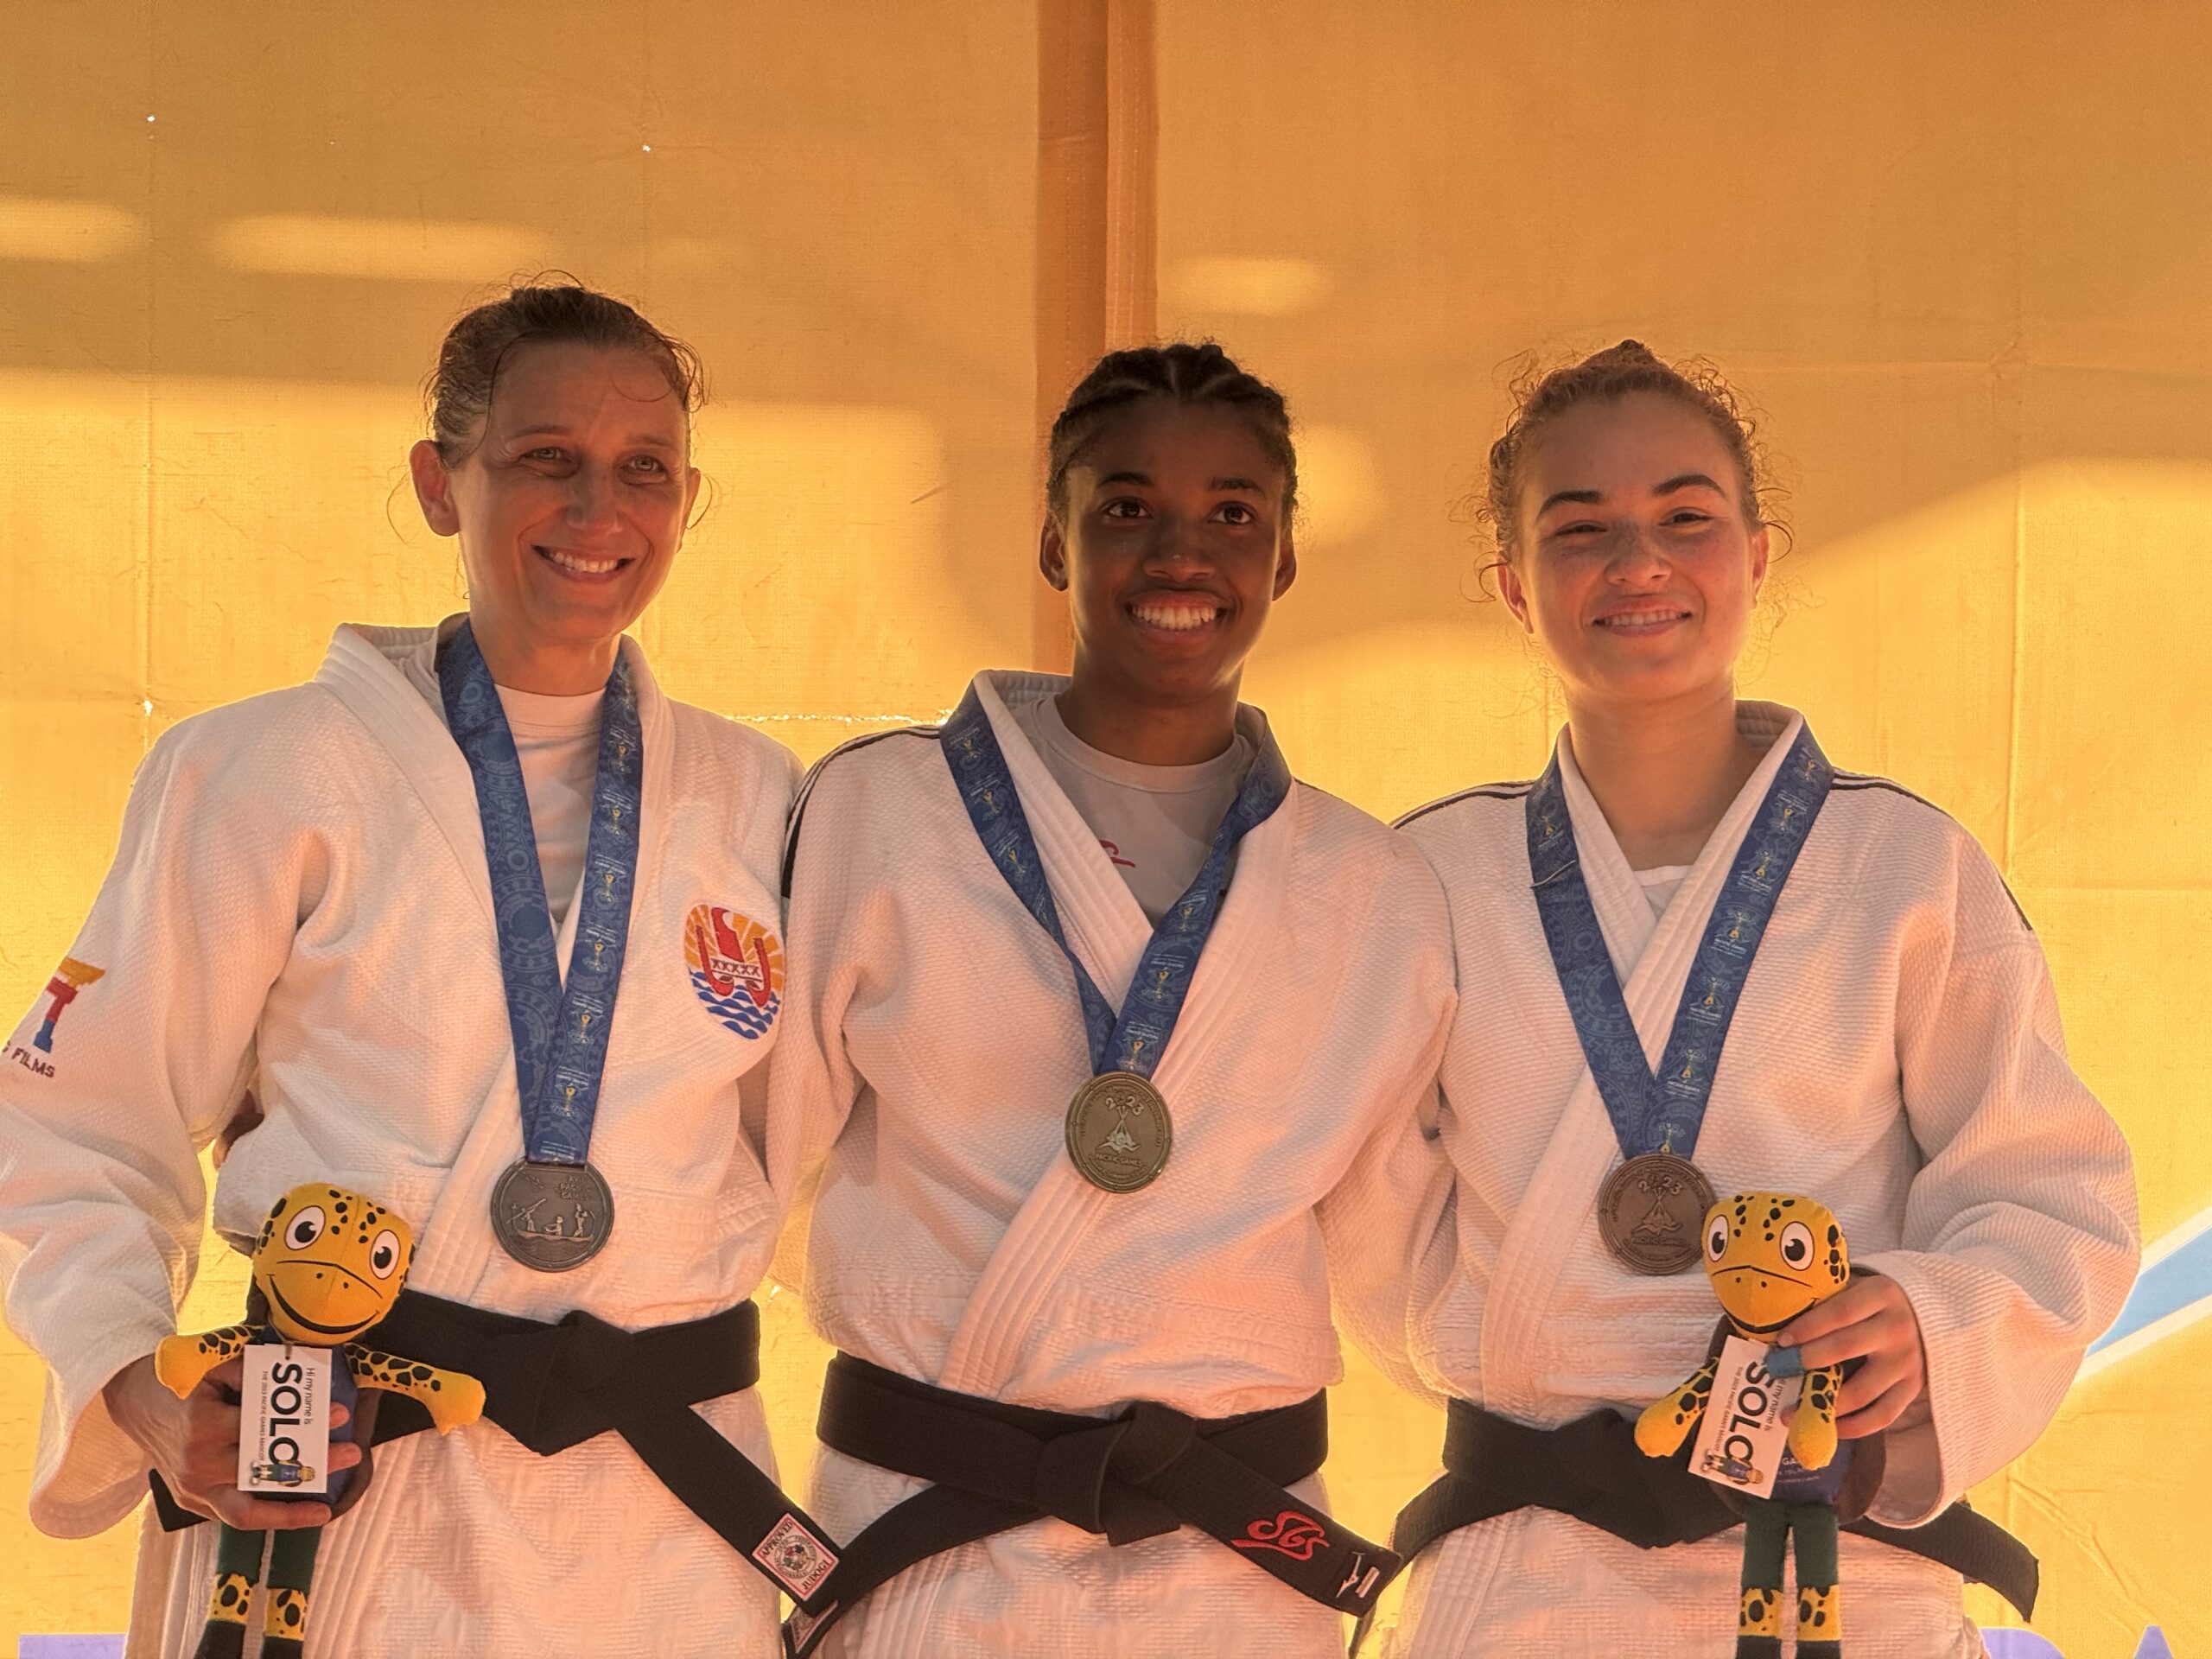 Female judo athletes showcasing medals